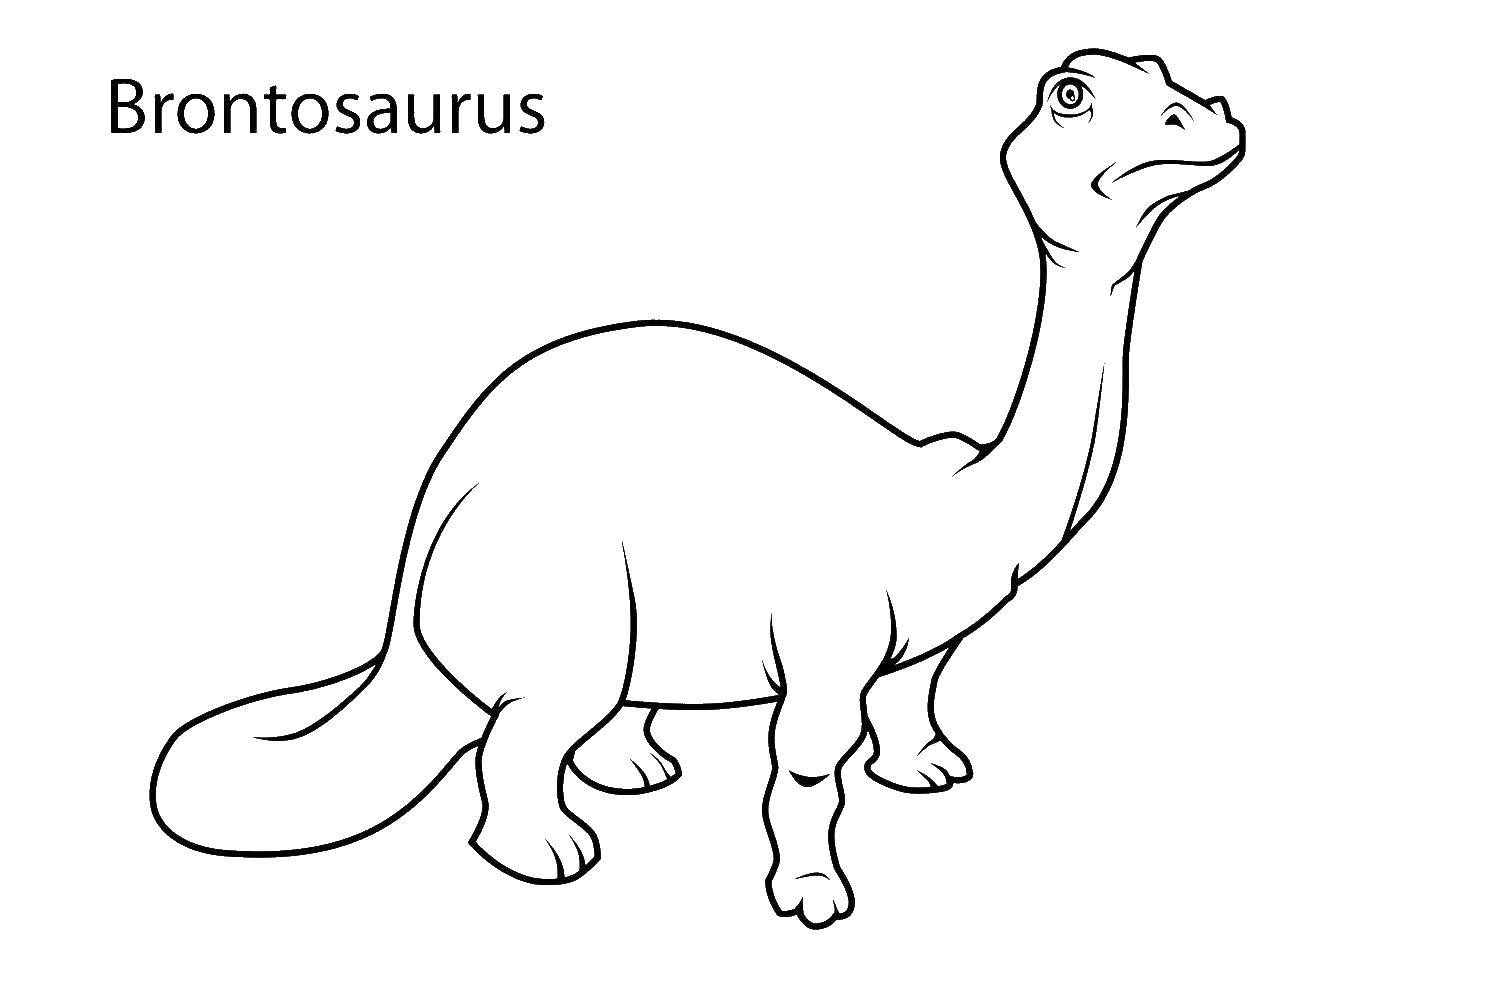 Coloring Brontosaurus. Category dinosaur. Tags:  Brontosaurus, dinosaurs.